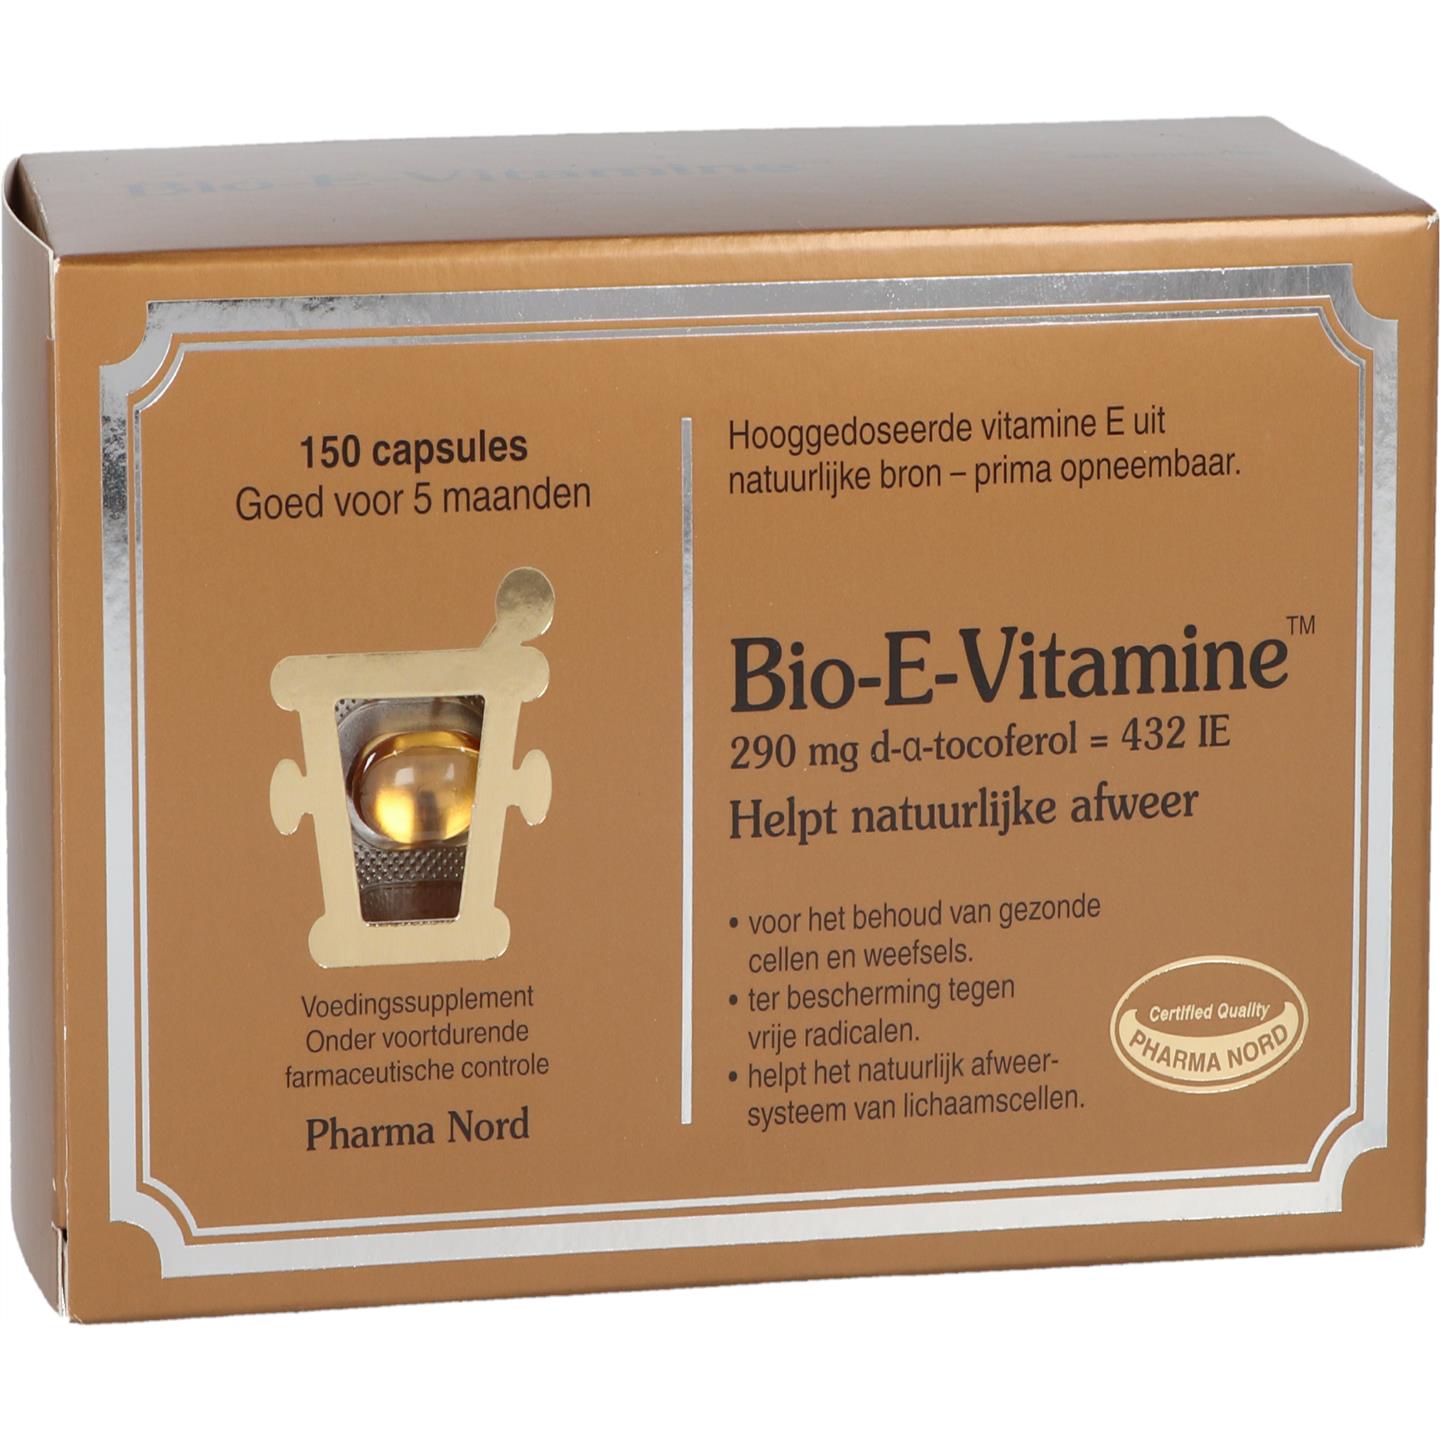 Bio-E-Vitamine